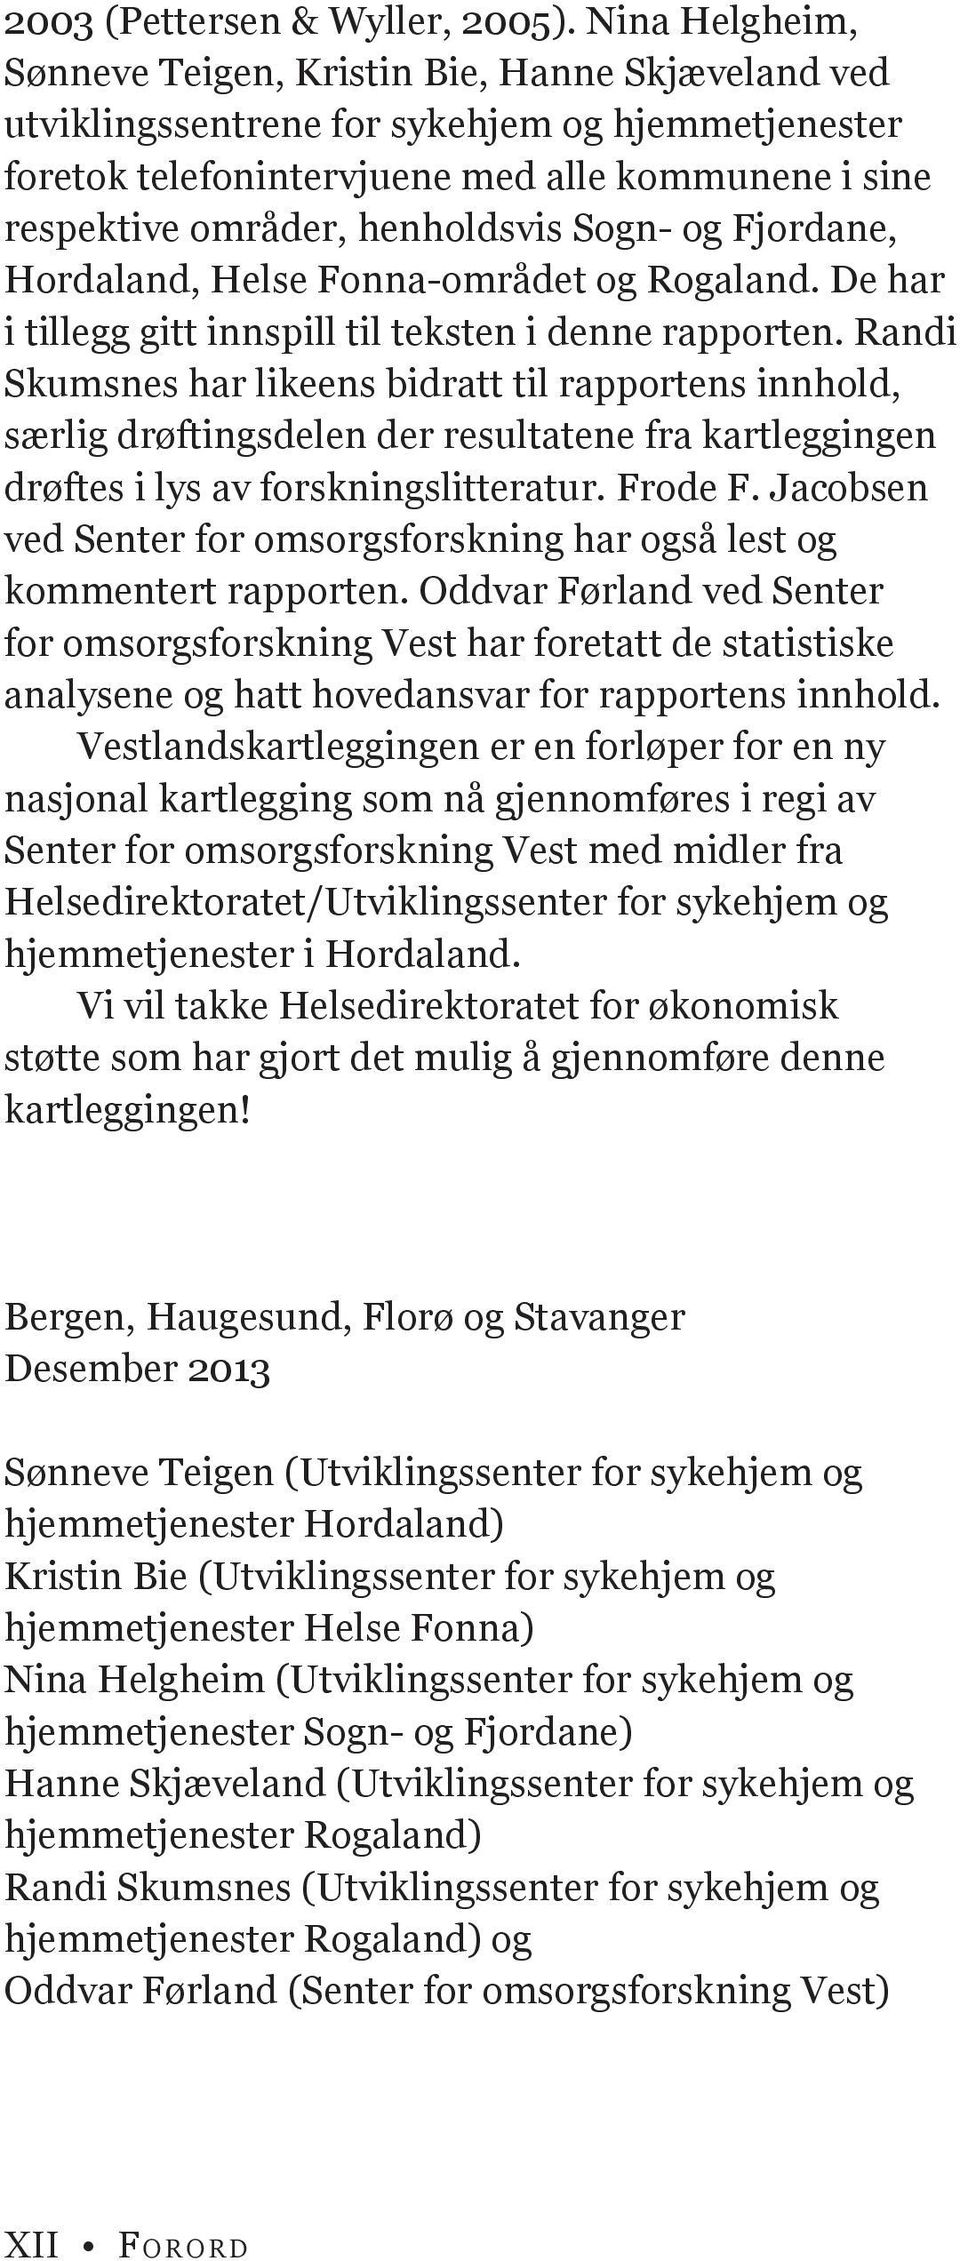 henholdsvis Sogn- og Fjordane, Hordaland, Helse Fonna-området og Rogaland. De har i tillegg gitt innspill til teksten i denne rapporten.